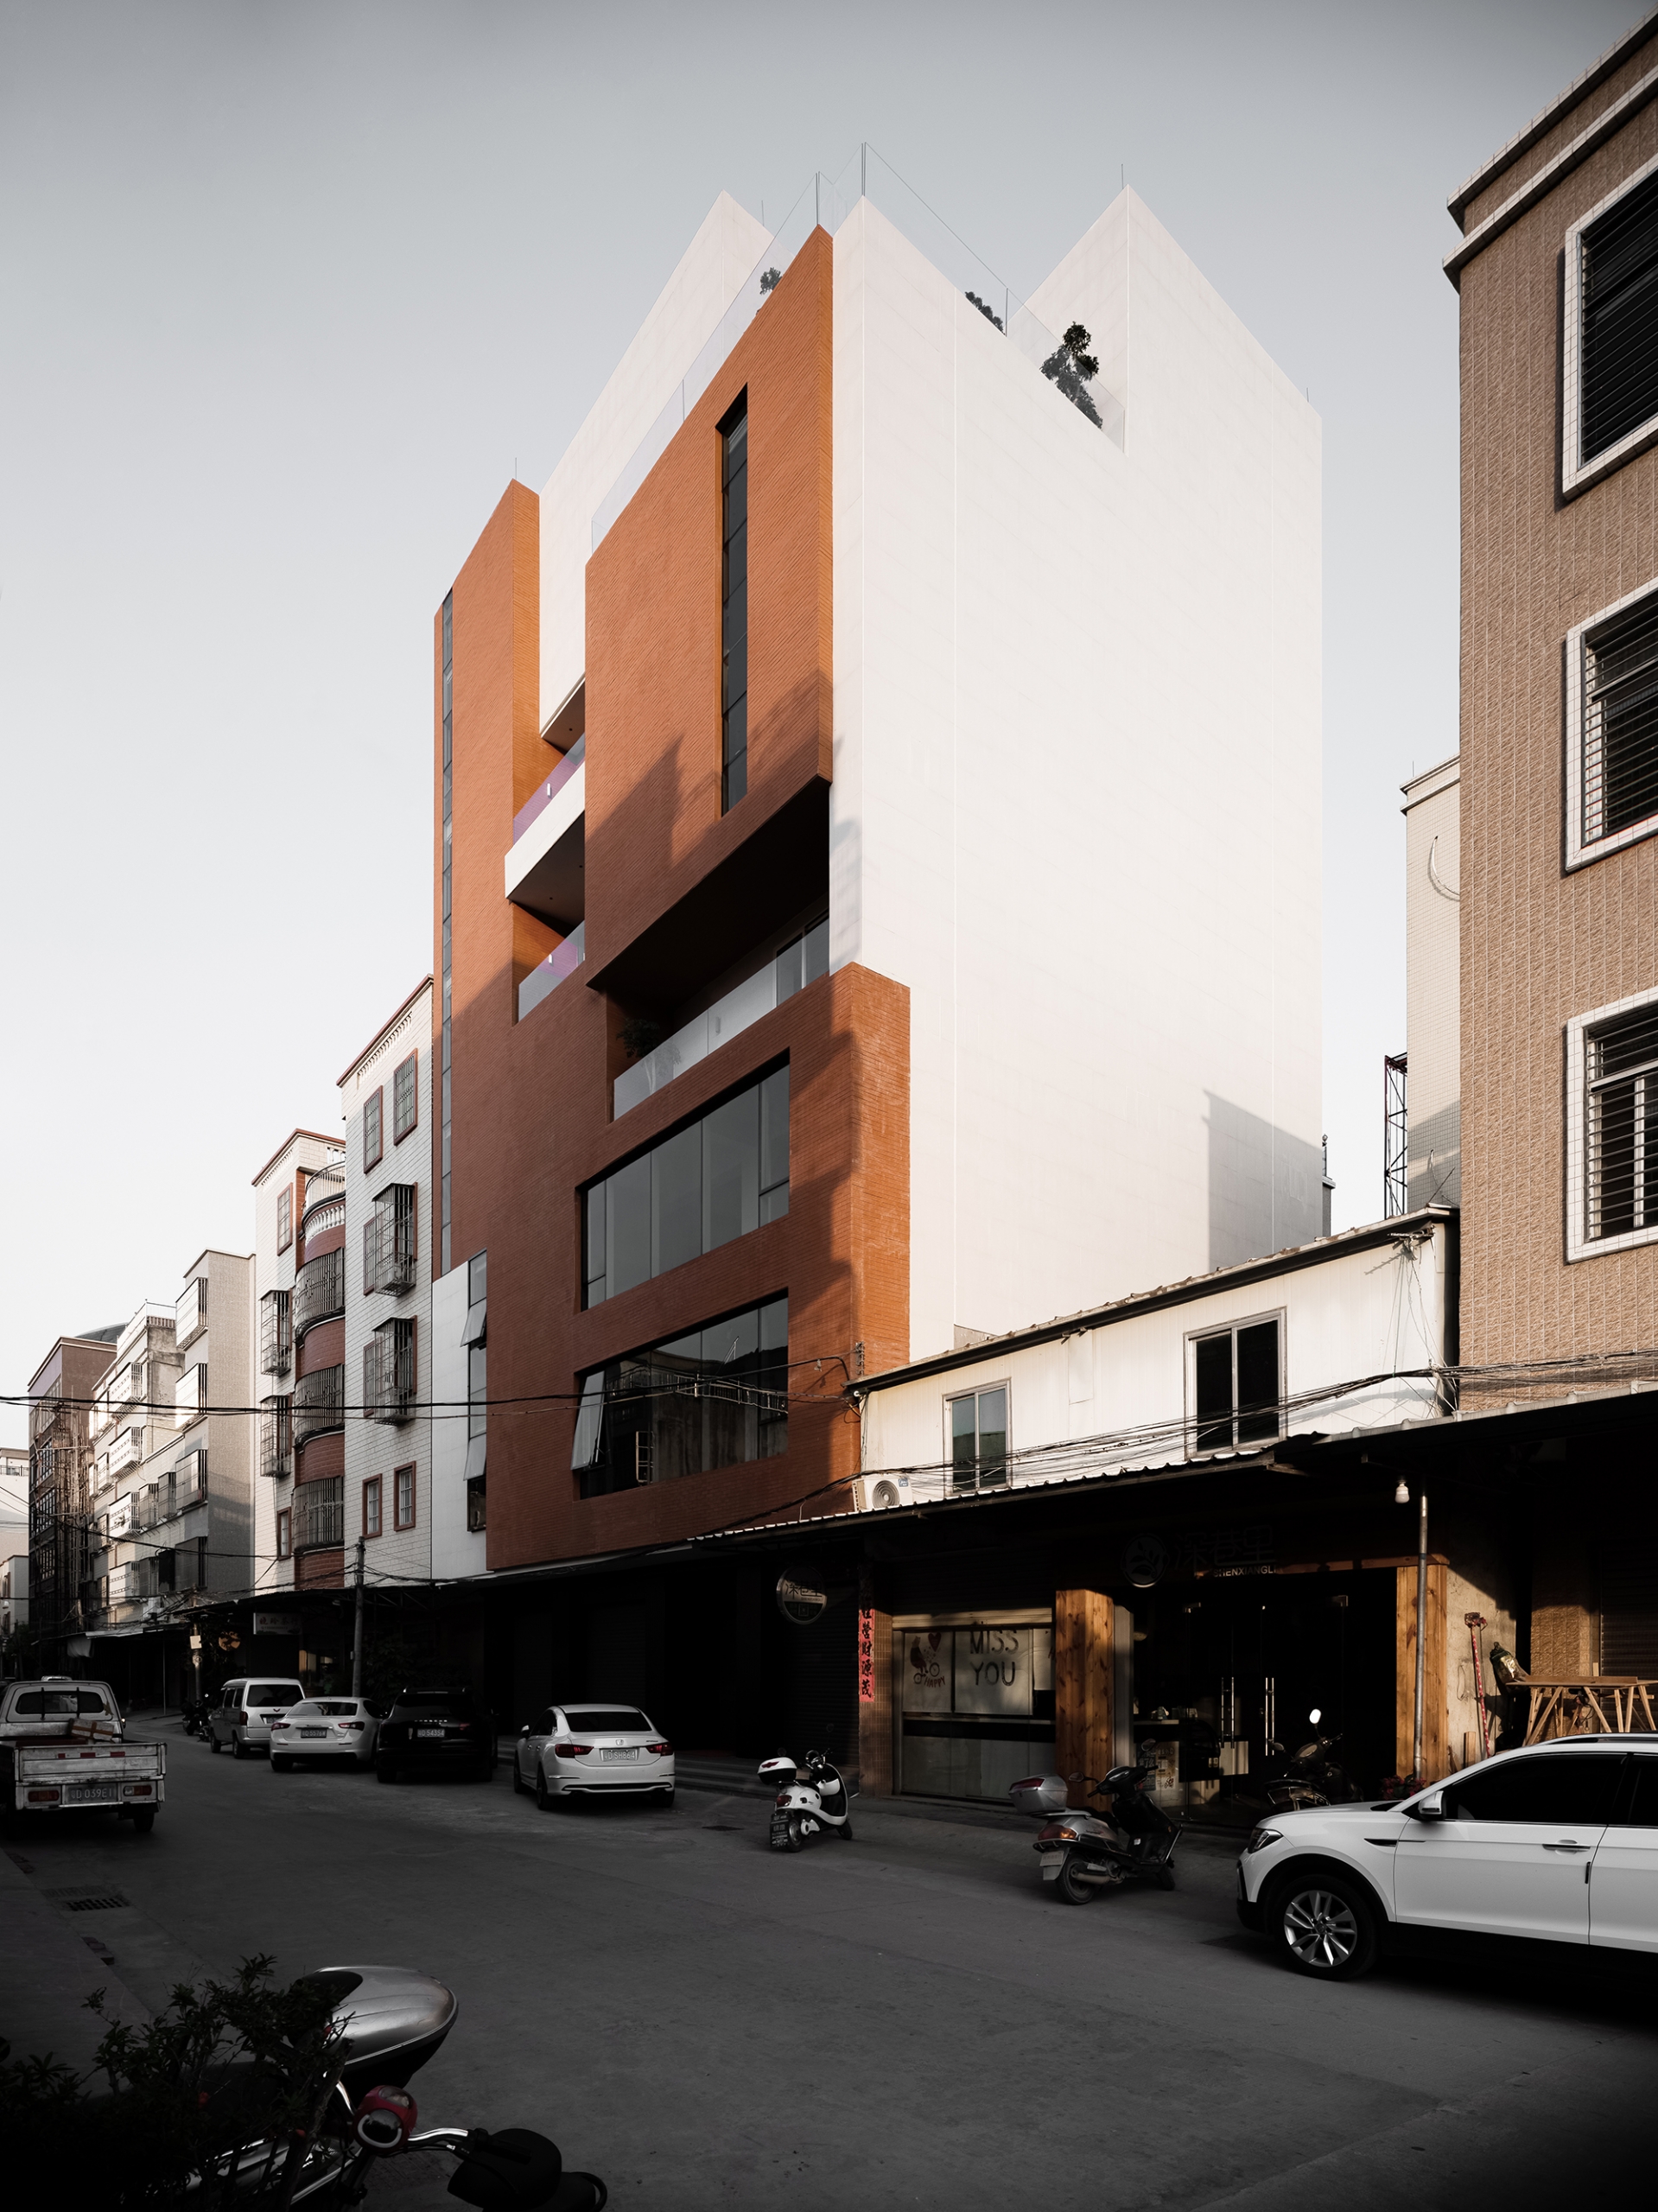 Giữa những tòa nhà hình hộp nhàm chán trong thành phố, Red Box được thiết kế để phá vỡ sự đơn điệu ấy. 